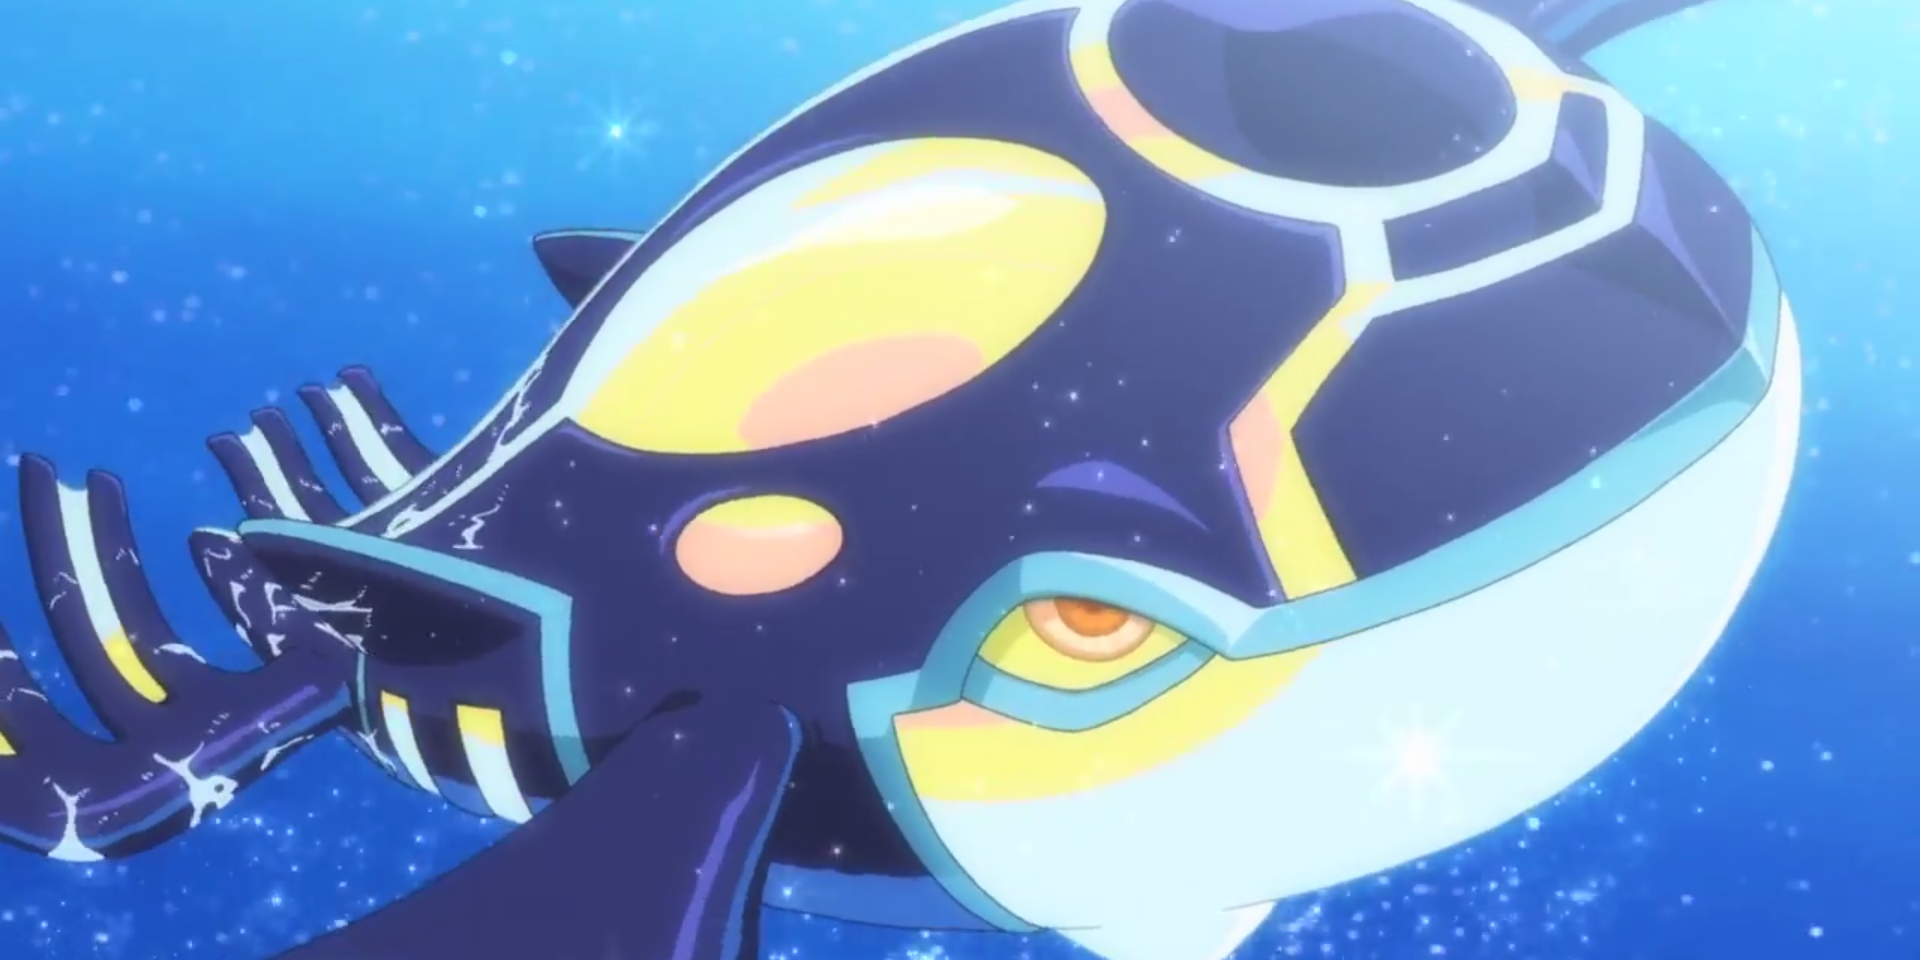 Pokémon Primal Kyogre semelhante a uma baleia nadando.